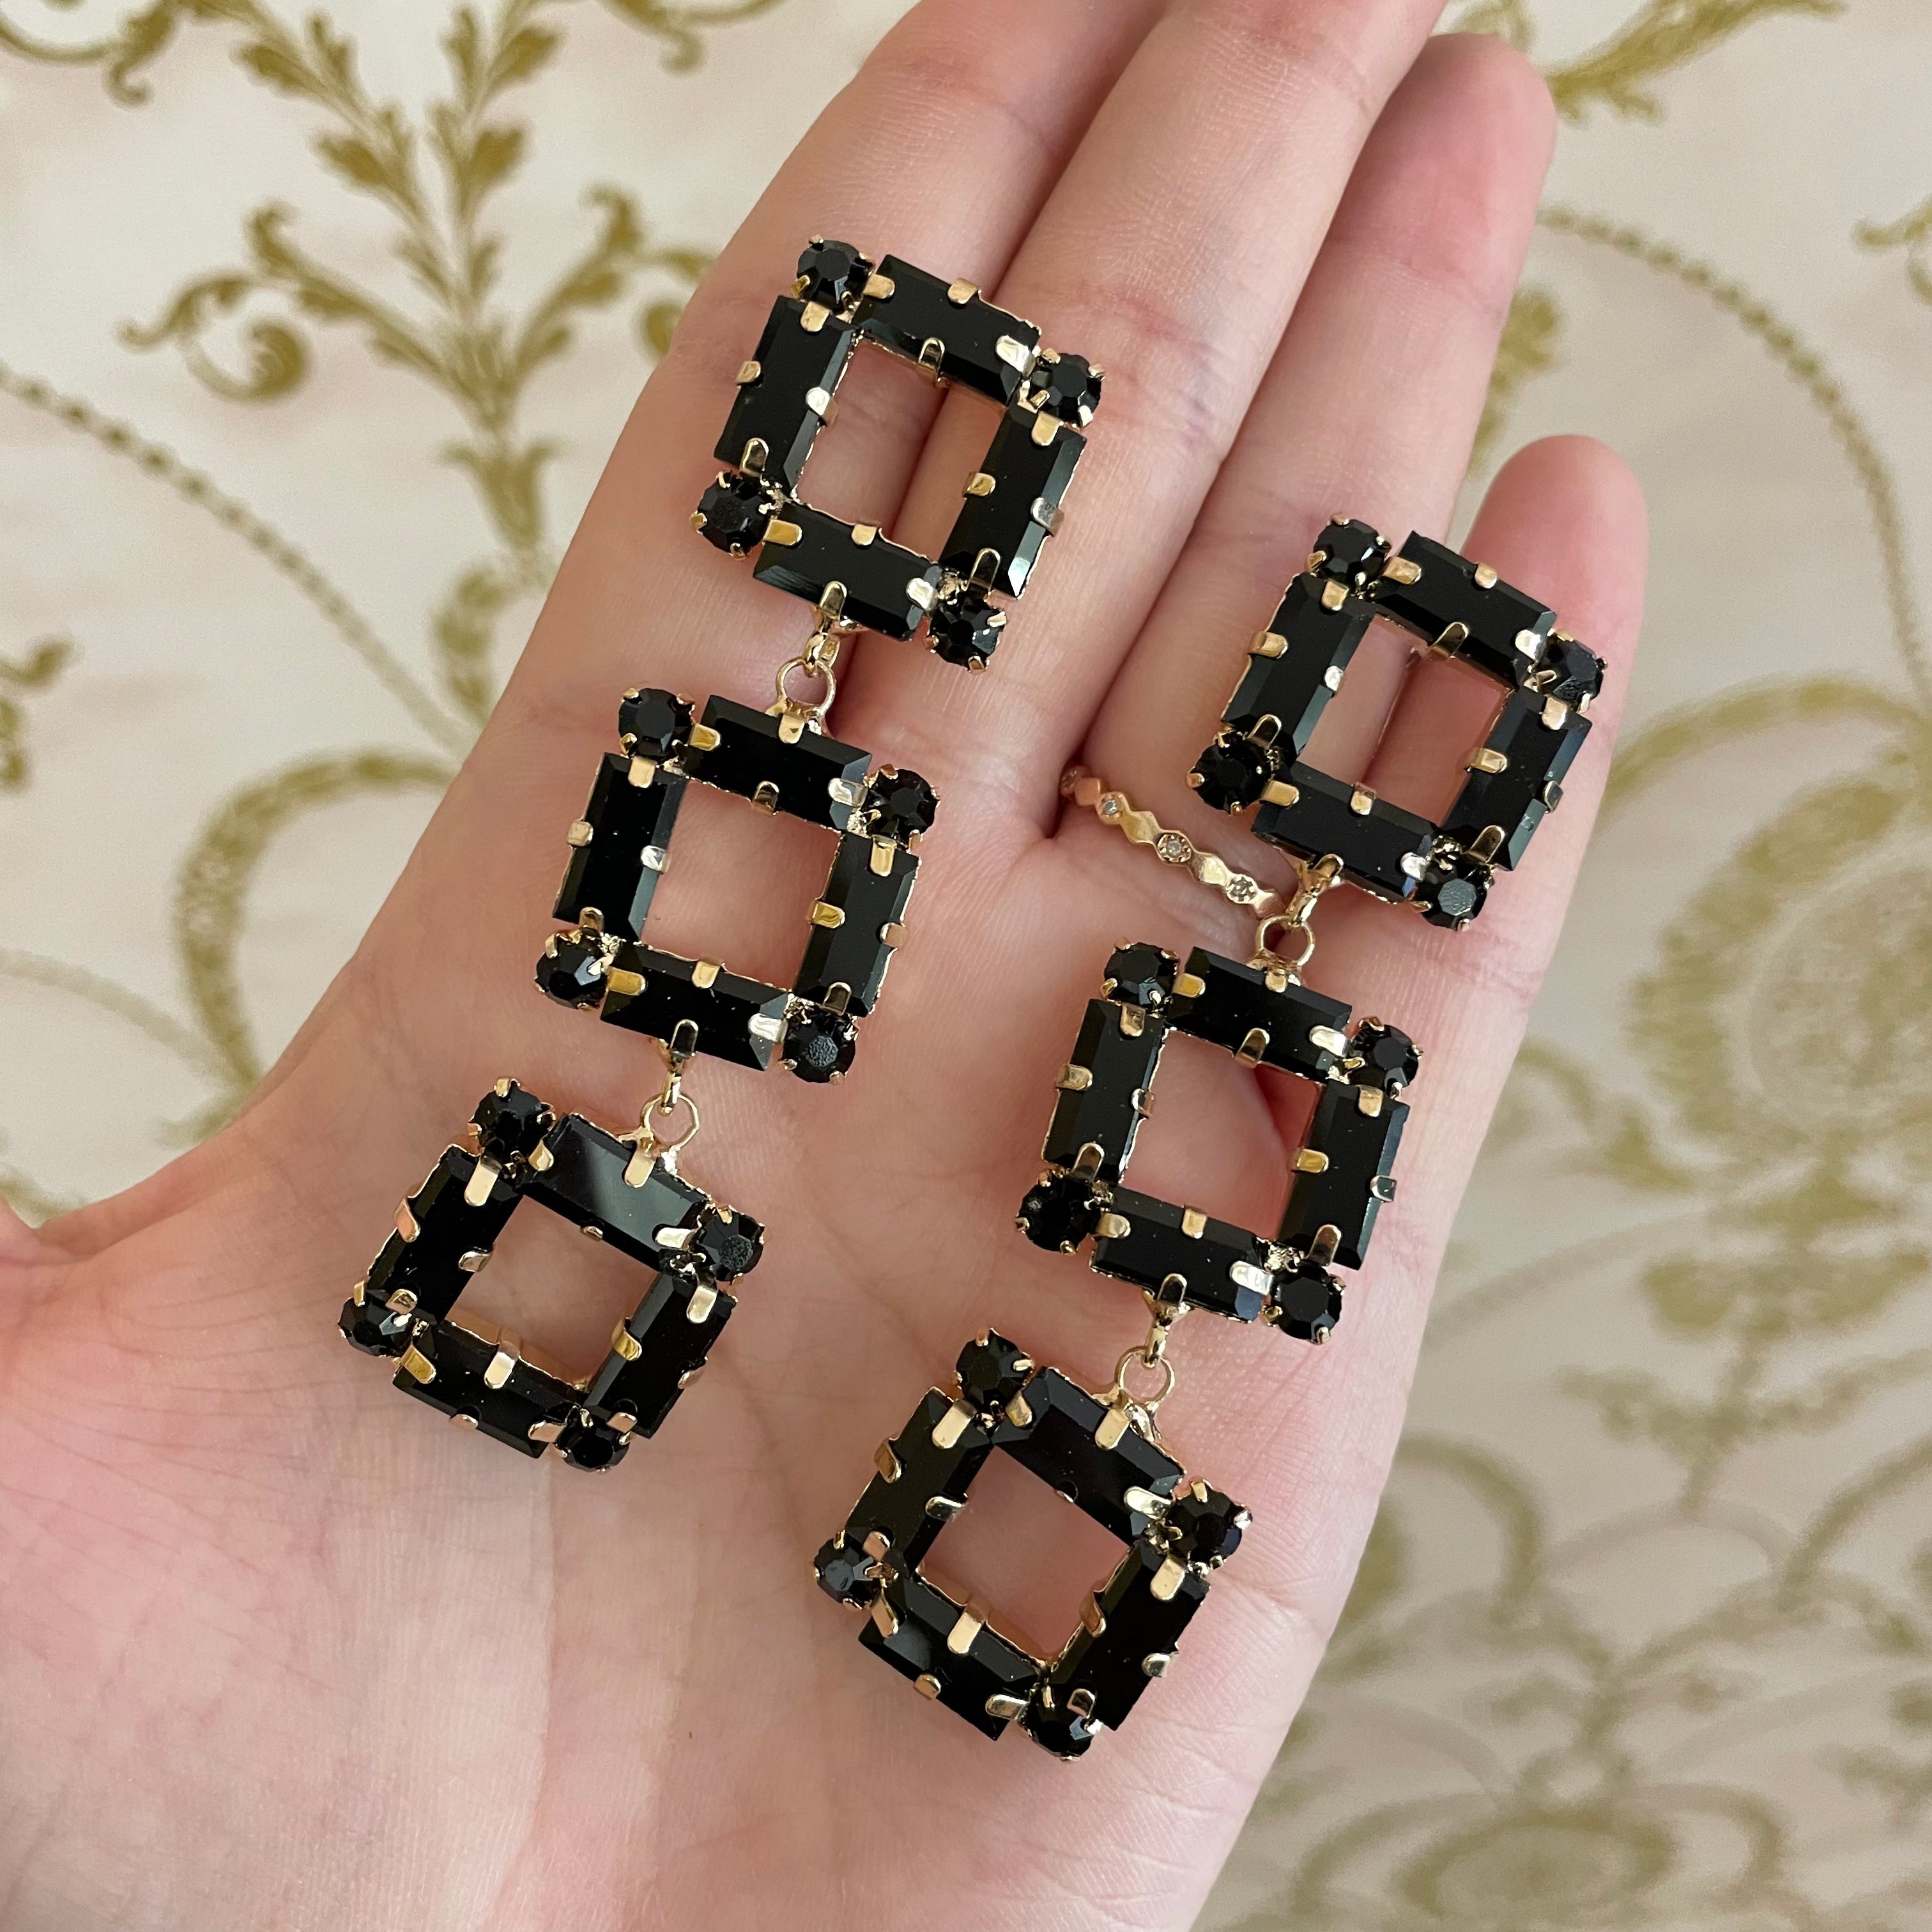 Square elegant earrings